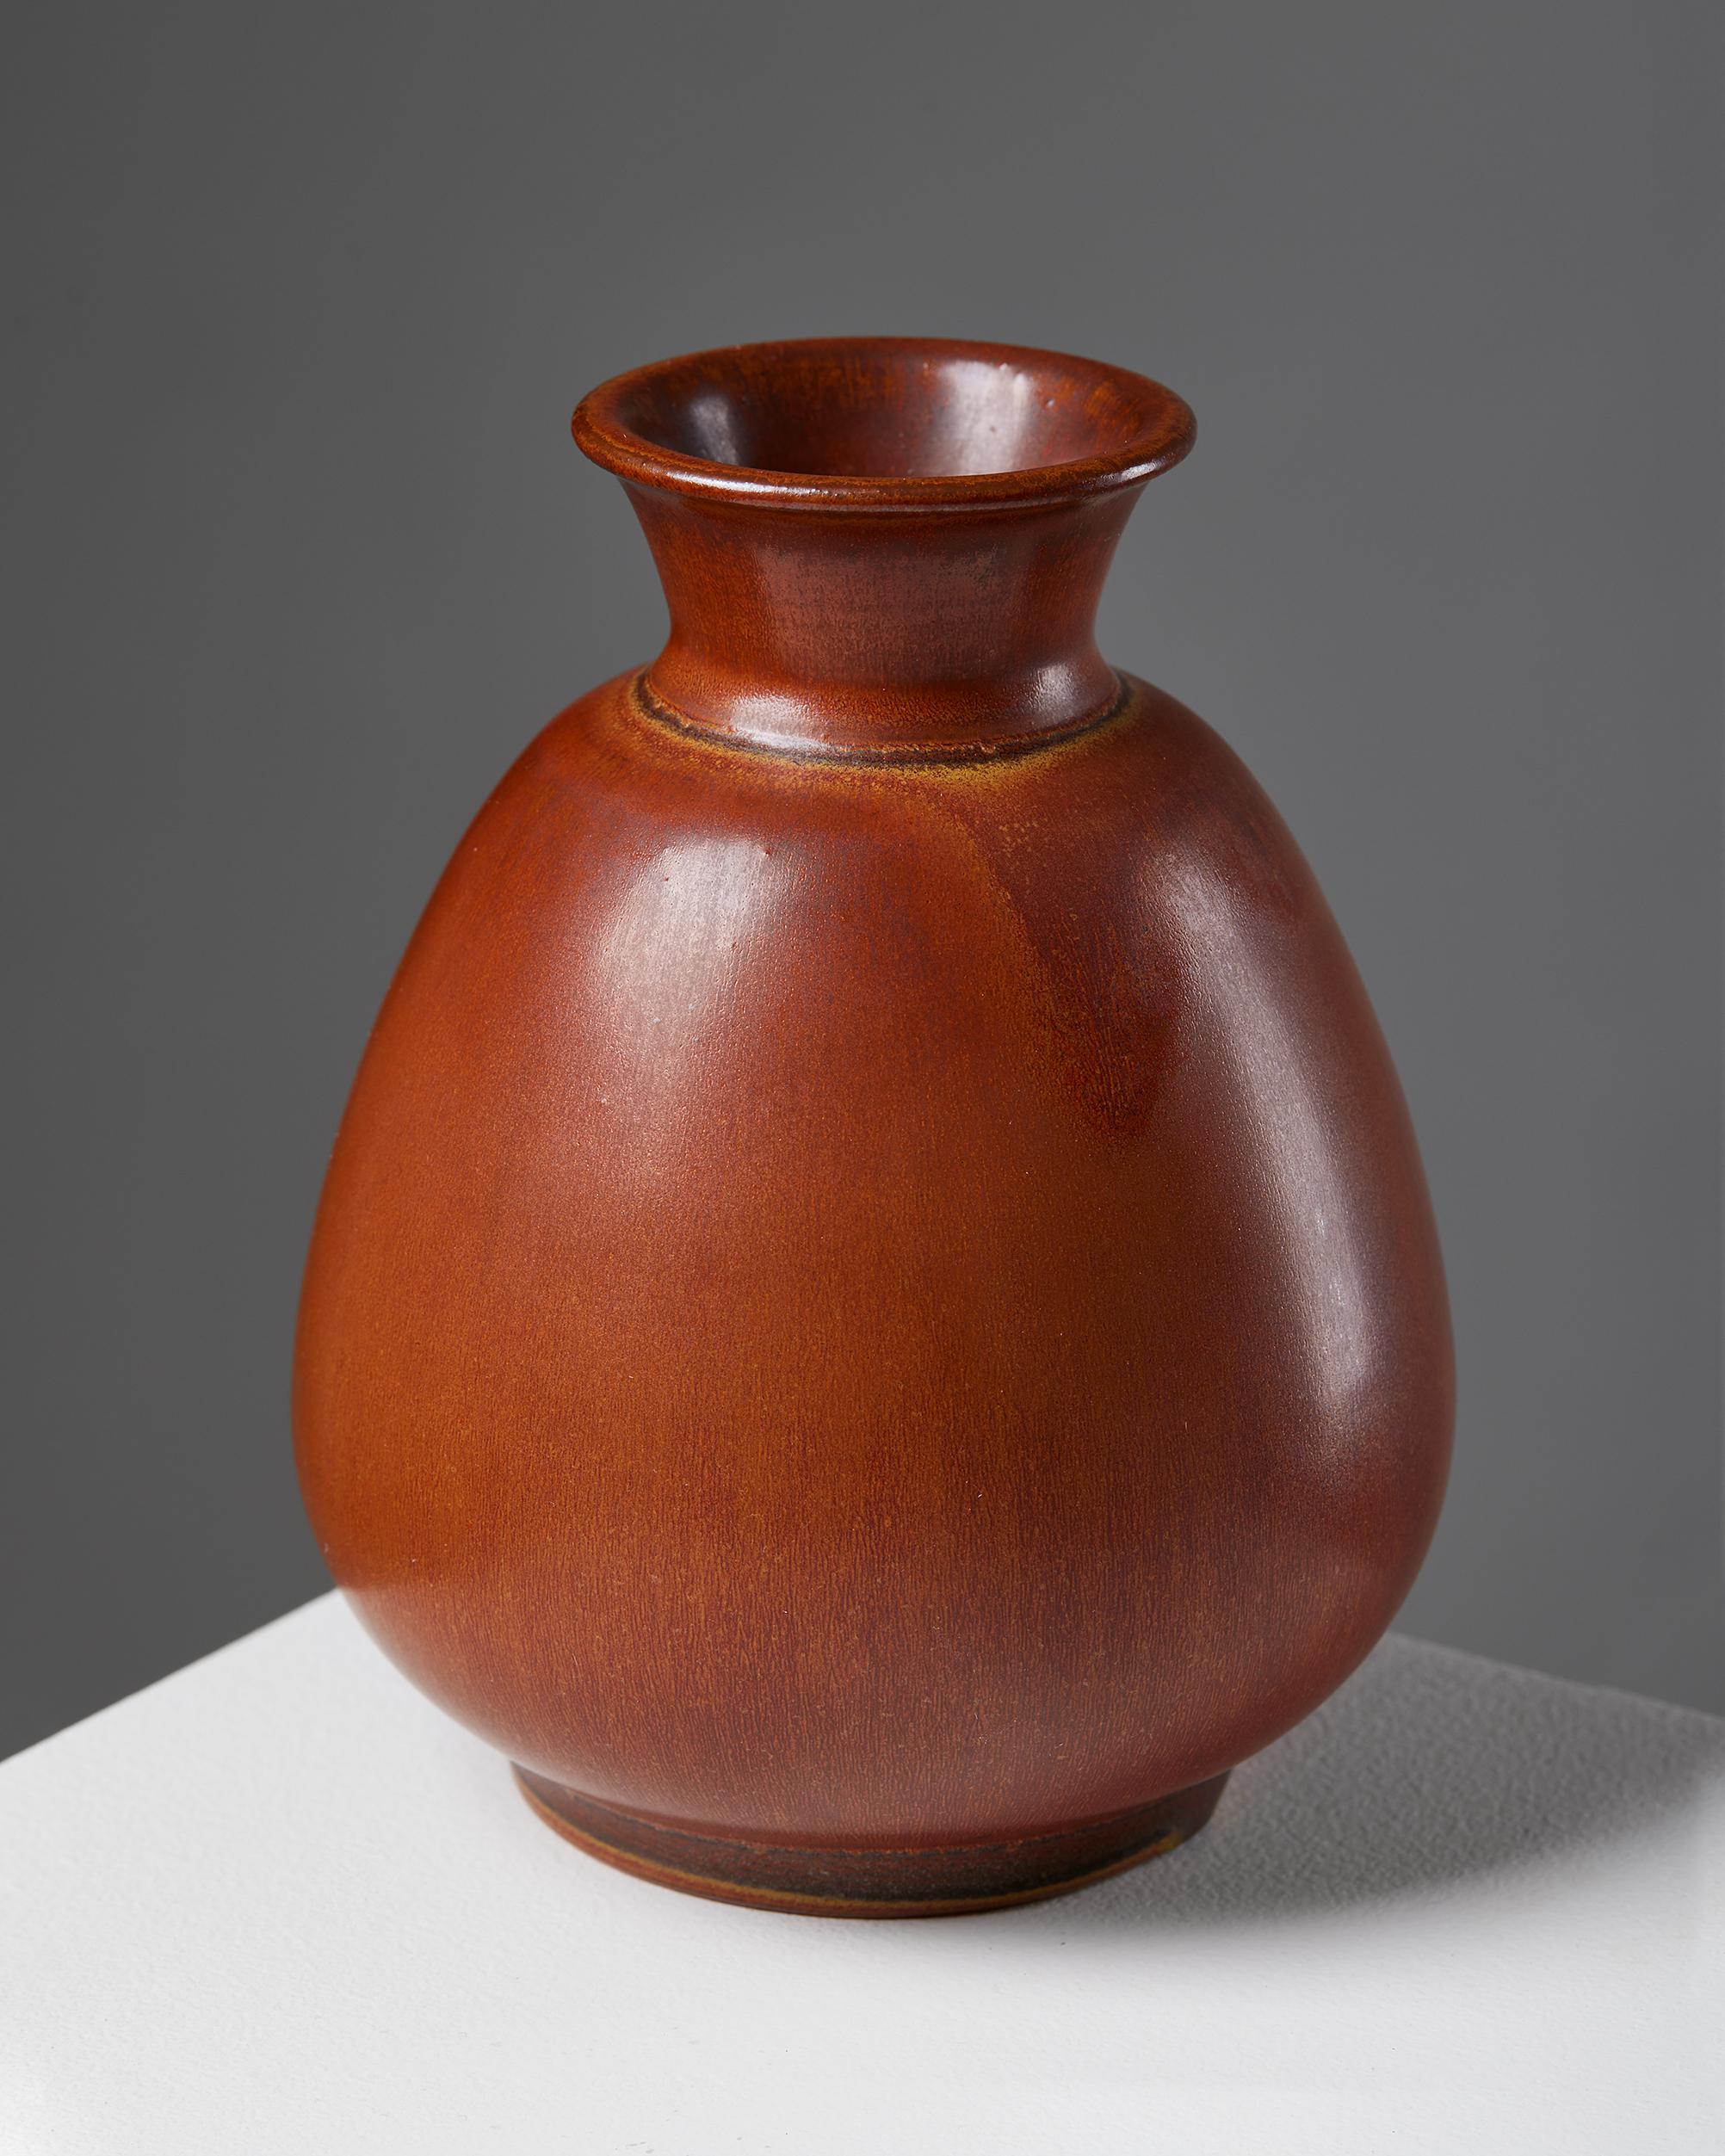 Vase designed by Erich and Ingrid Triller for Tobo, Sweden, 1950s

Signed.

Measures: H: 13.5 cm / 5 1/4''
D: 11 cm / 4 1/4''.